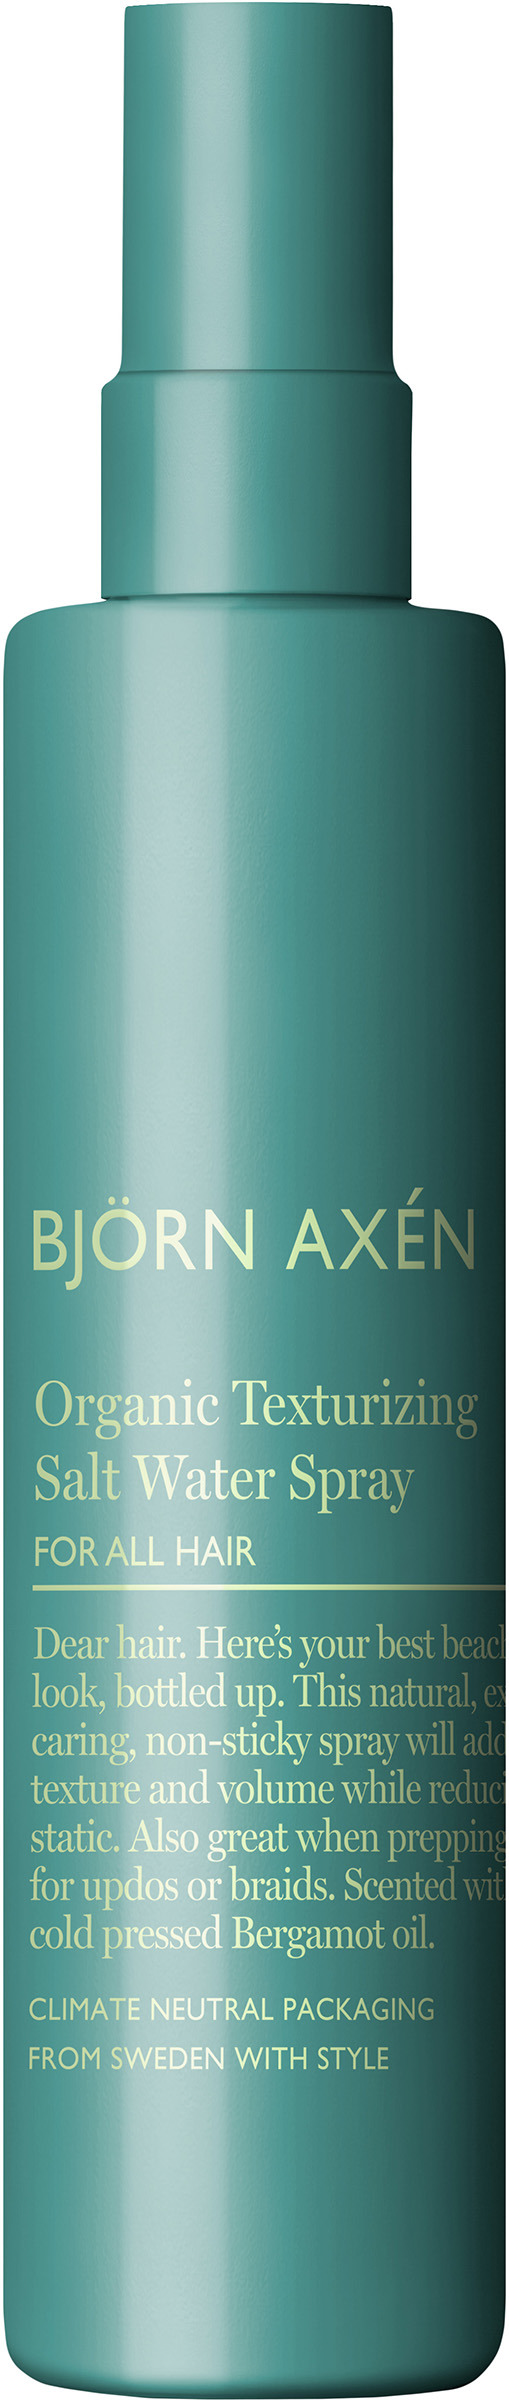 Björn Axén Organic Texturizing Salt Water Spray Parf 150 ml